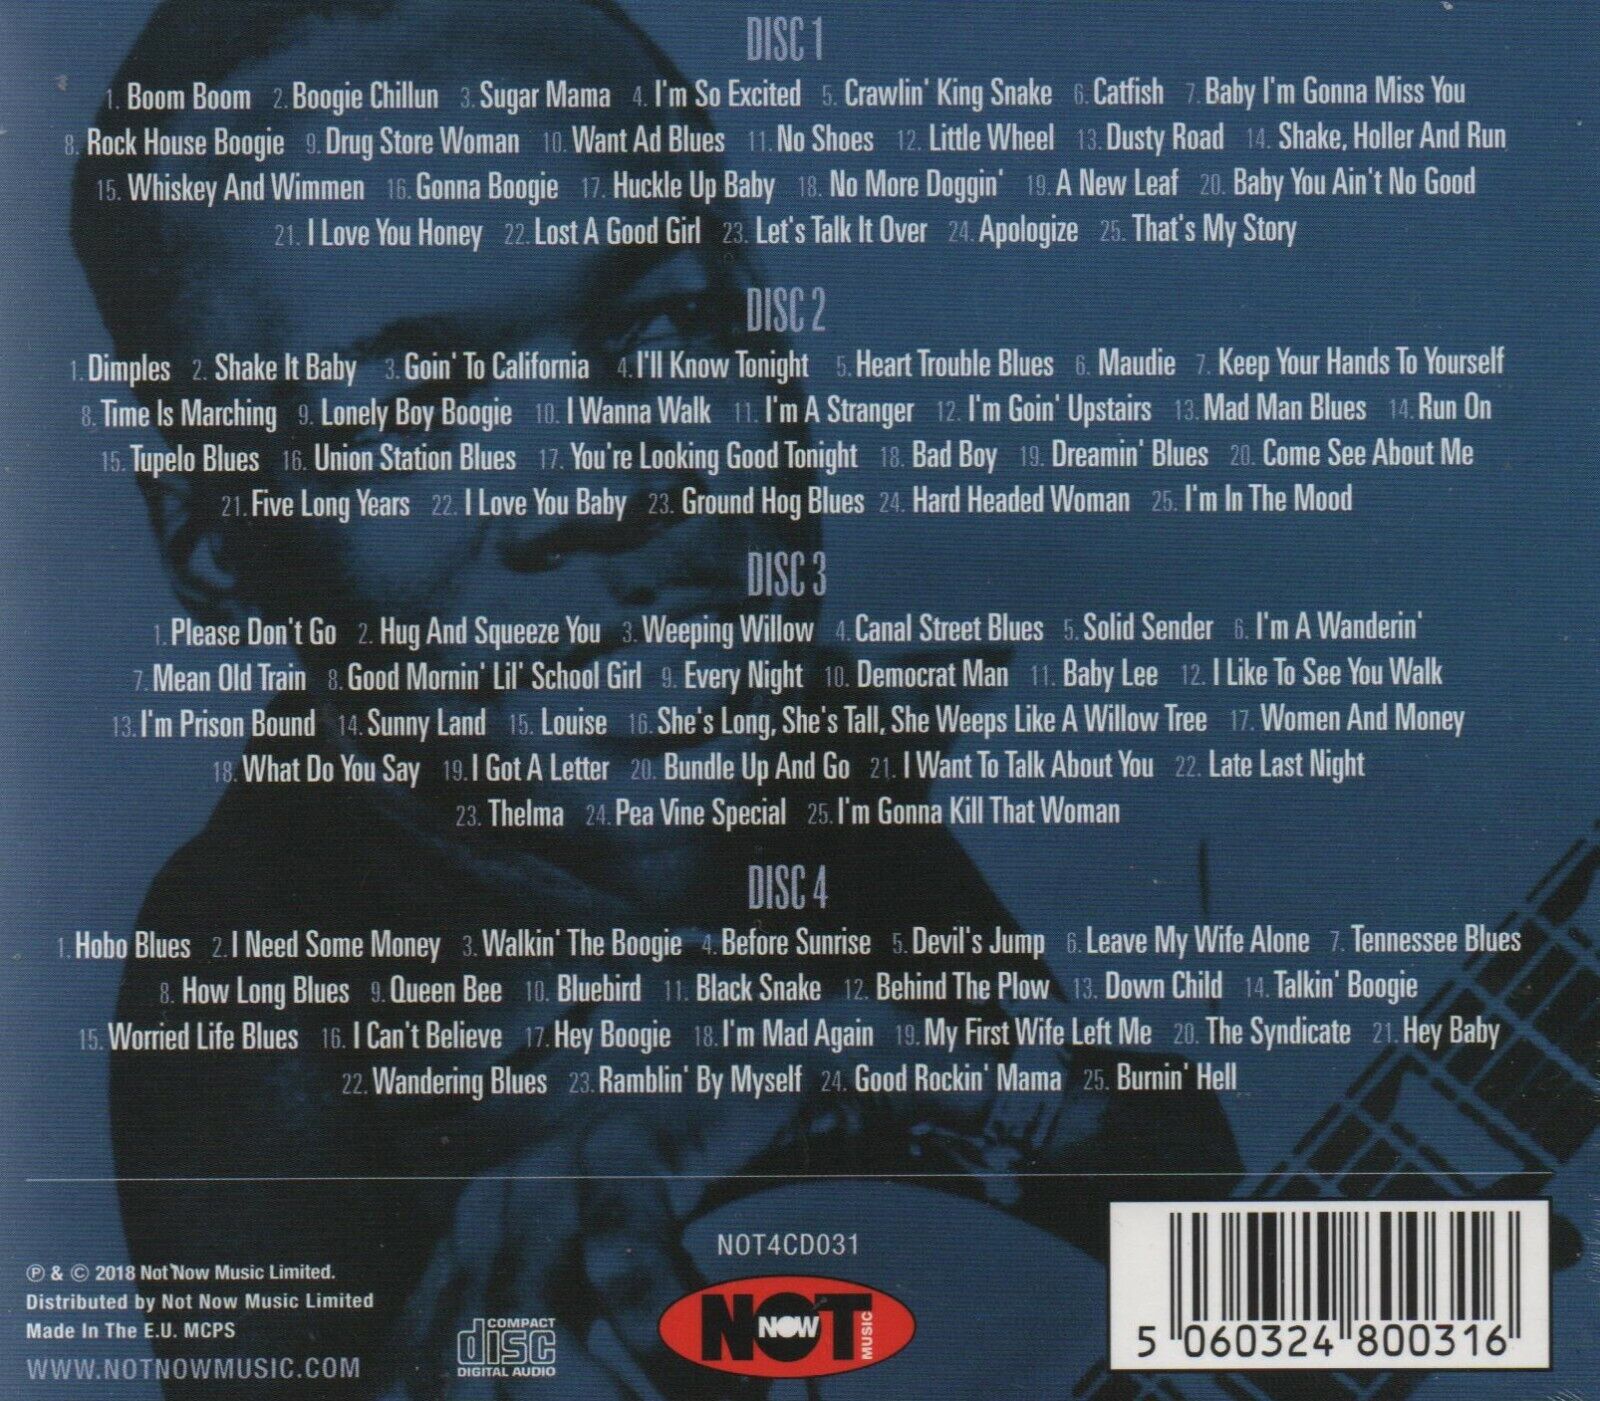 존 리 후커 100곡의 인기곡 모음집  (John Lee Hooker - 100 Greats)